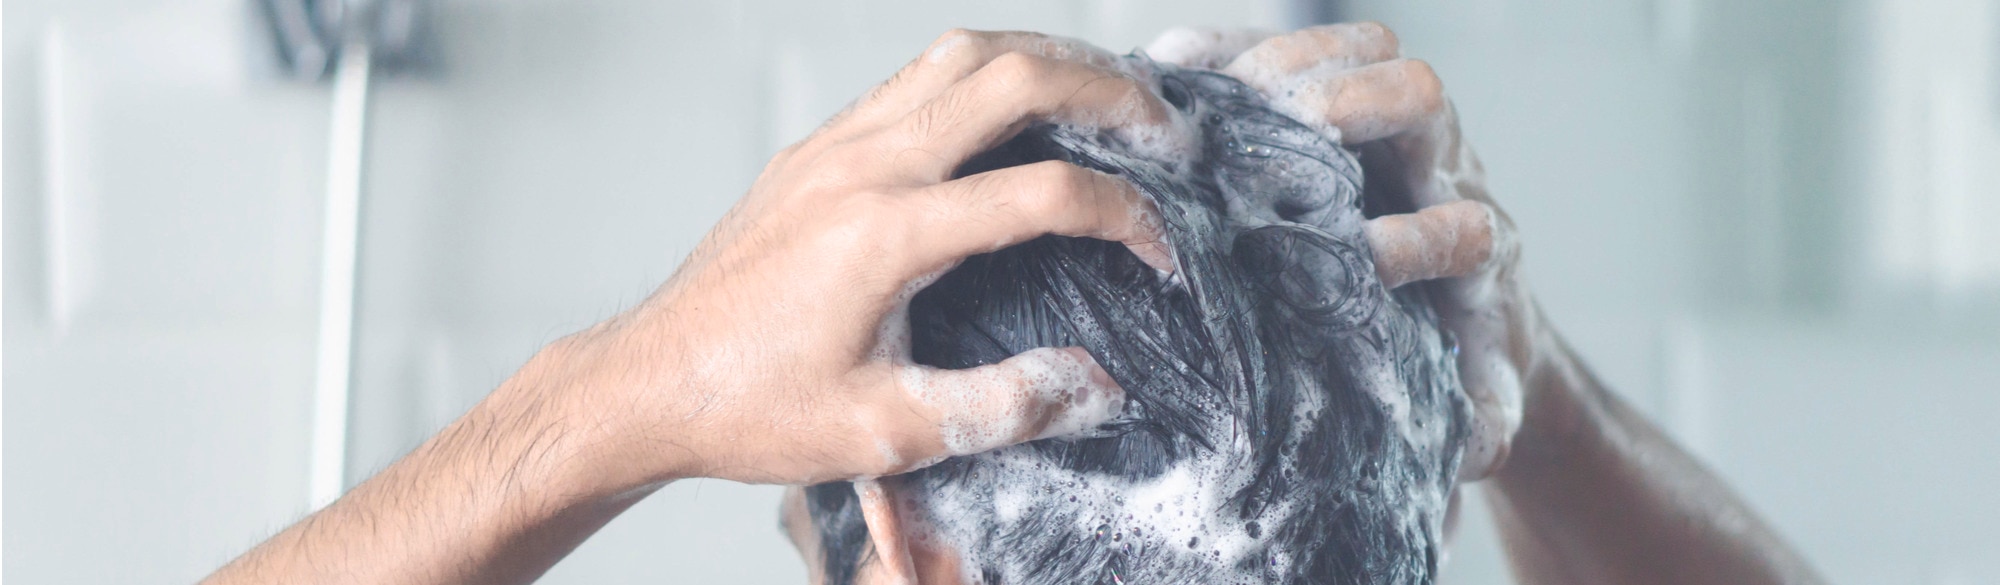 cara membersihkan kulit kepala yang kotor